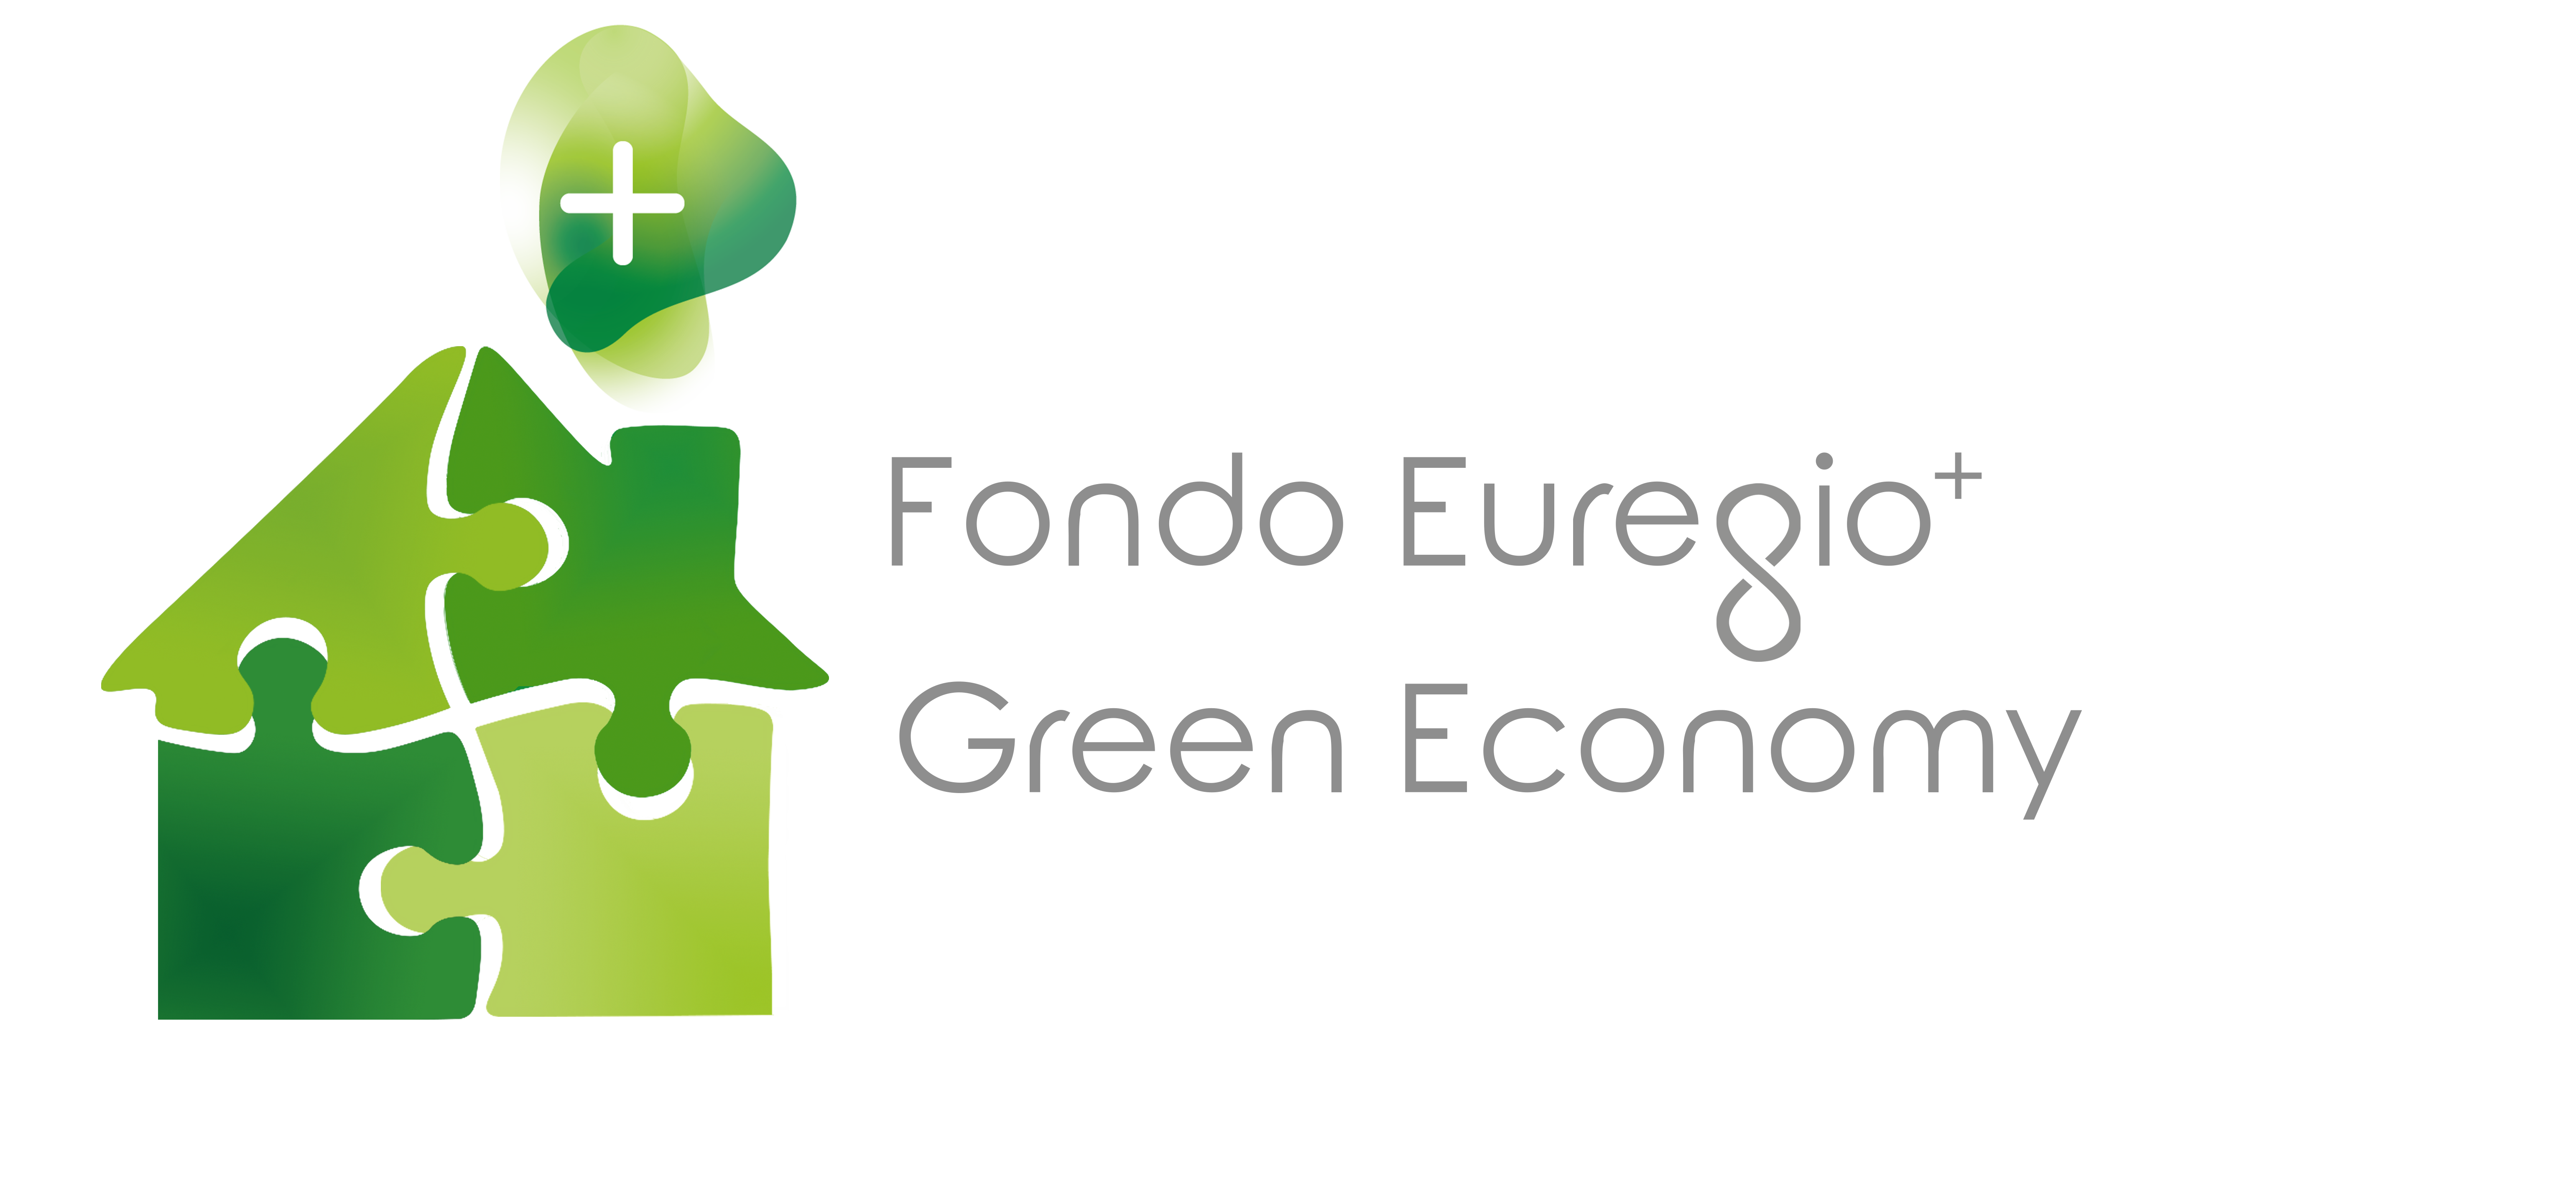 Green Economy 